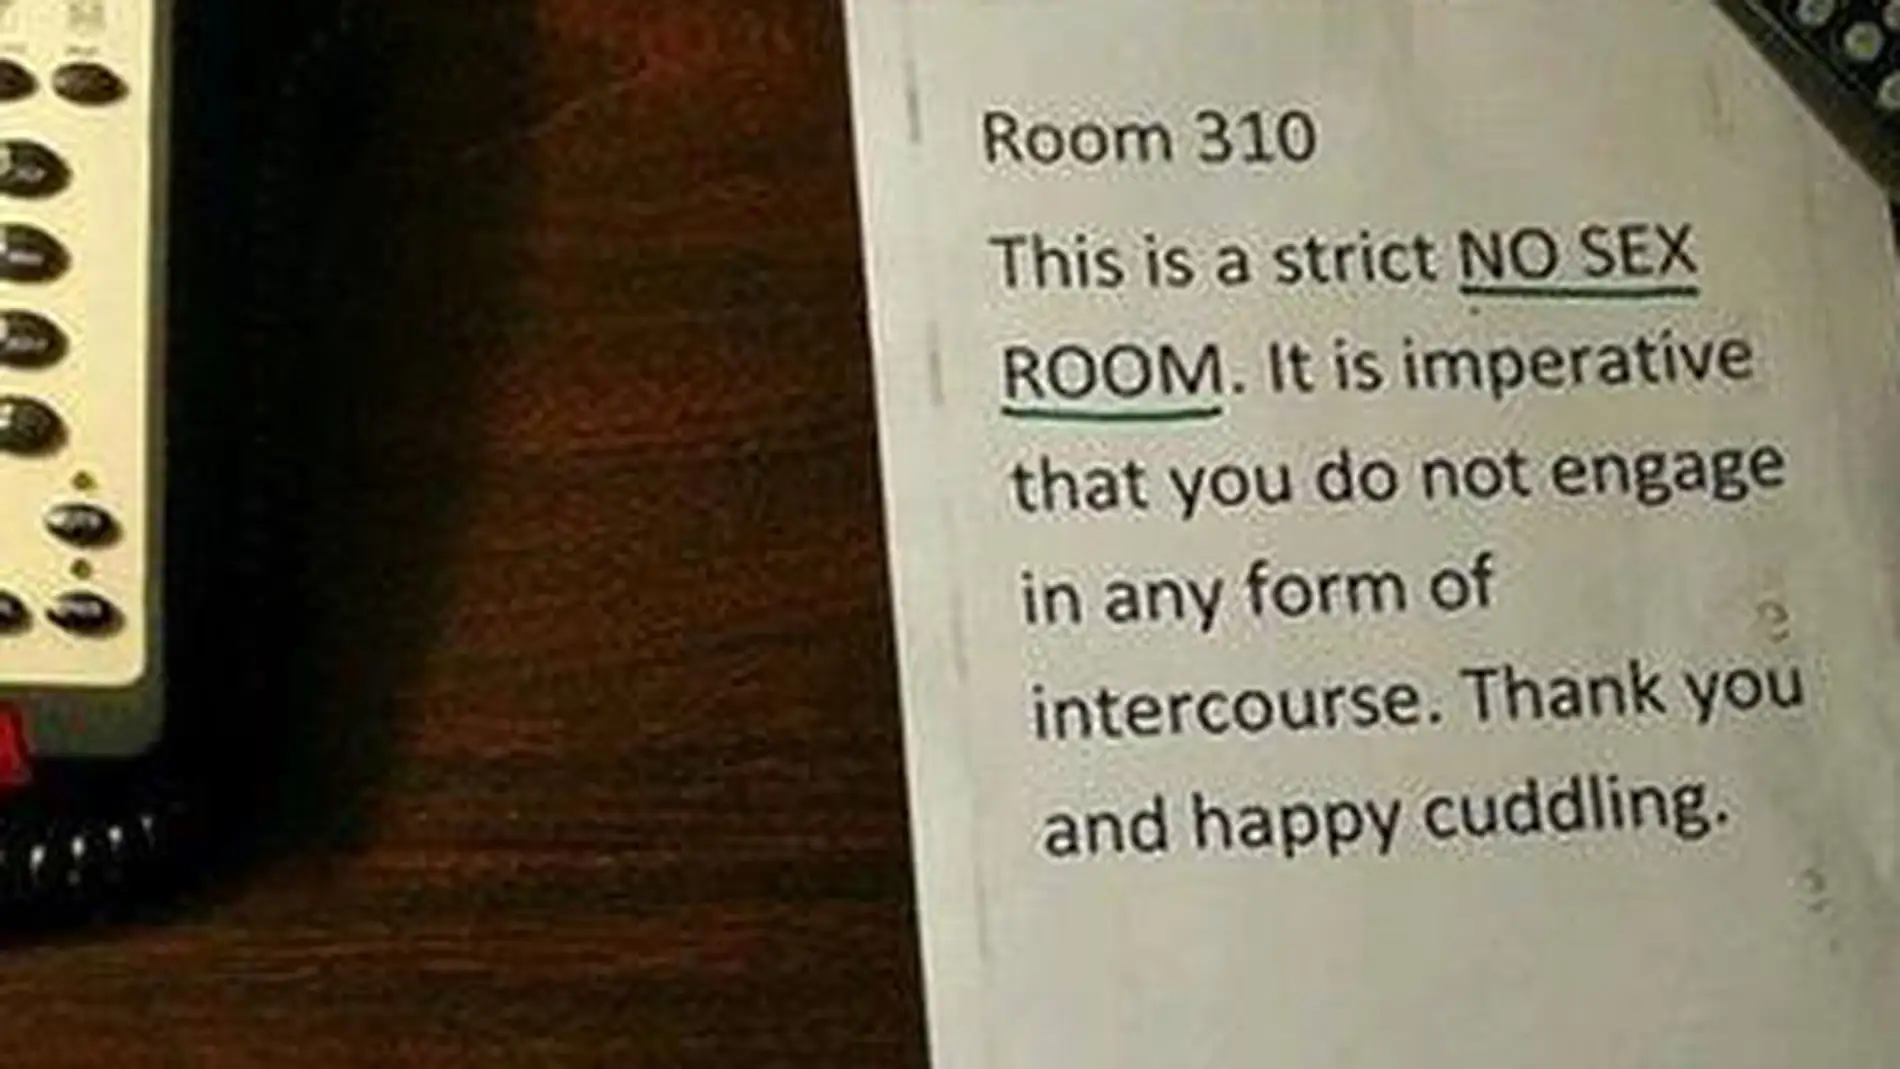 Nota en una habitación de hotel que prohíbe mantener relaciones sexuales